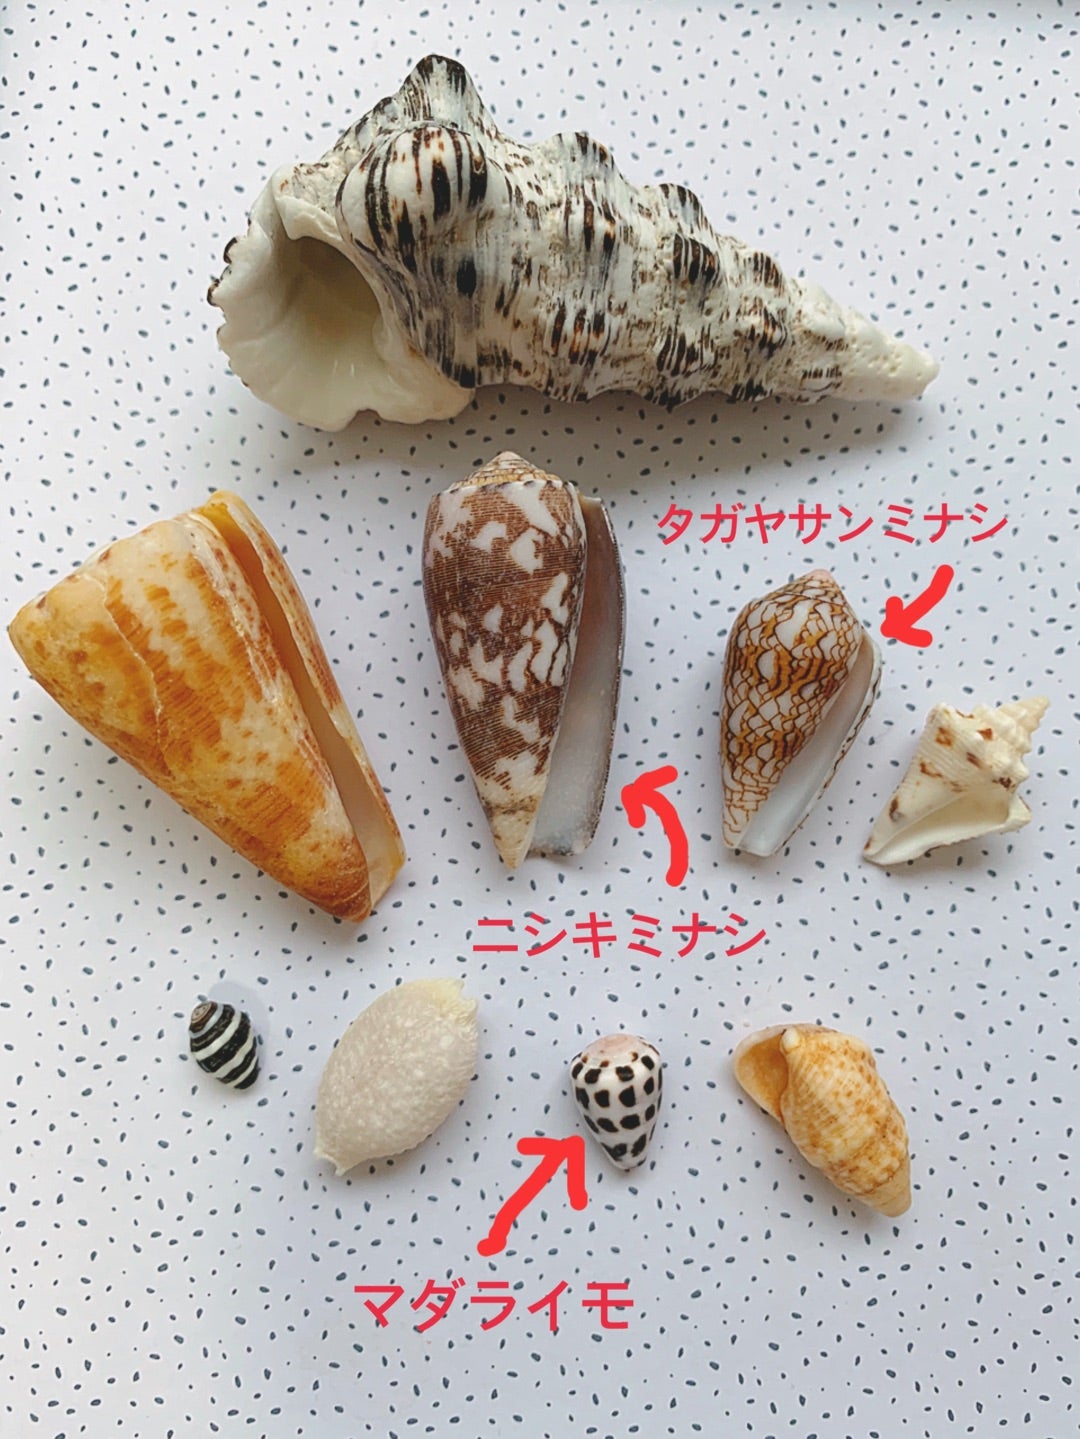 沖縄でよく拾えた貝殻 ビーチコーミング記録